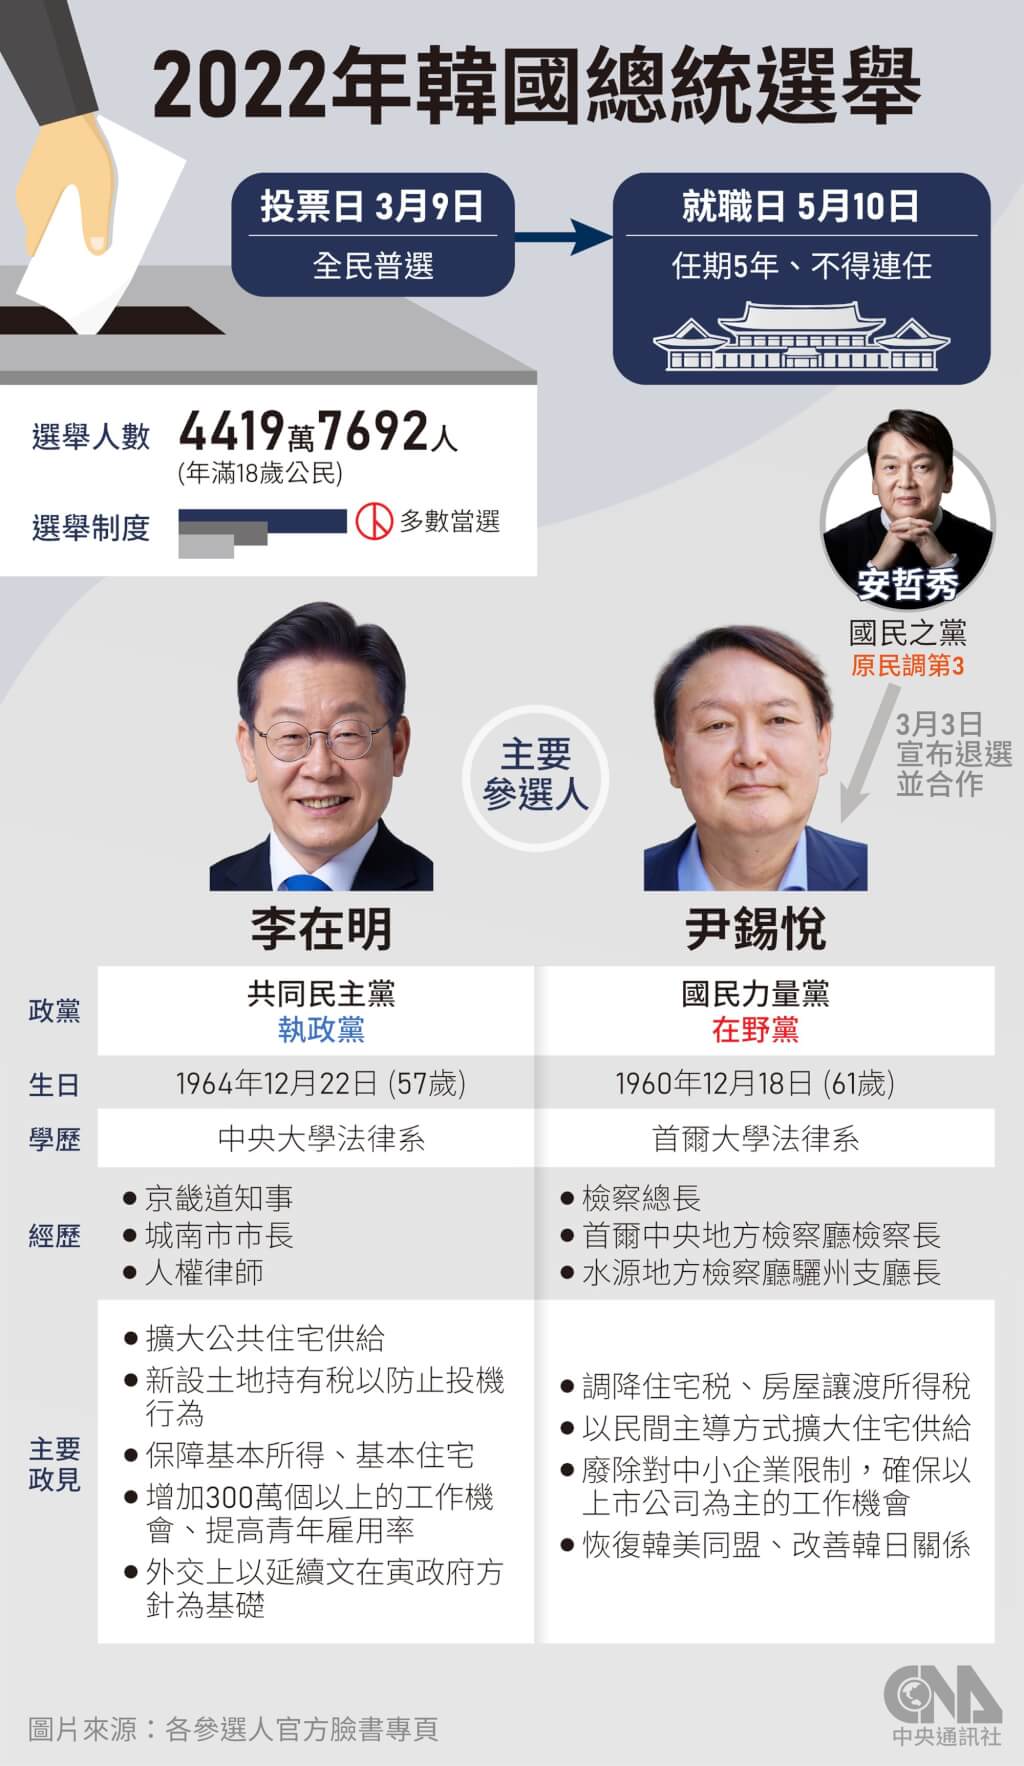 韩总统大选 提前投票率创17.57%新高